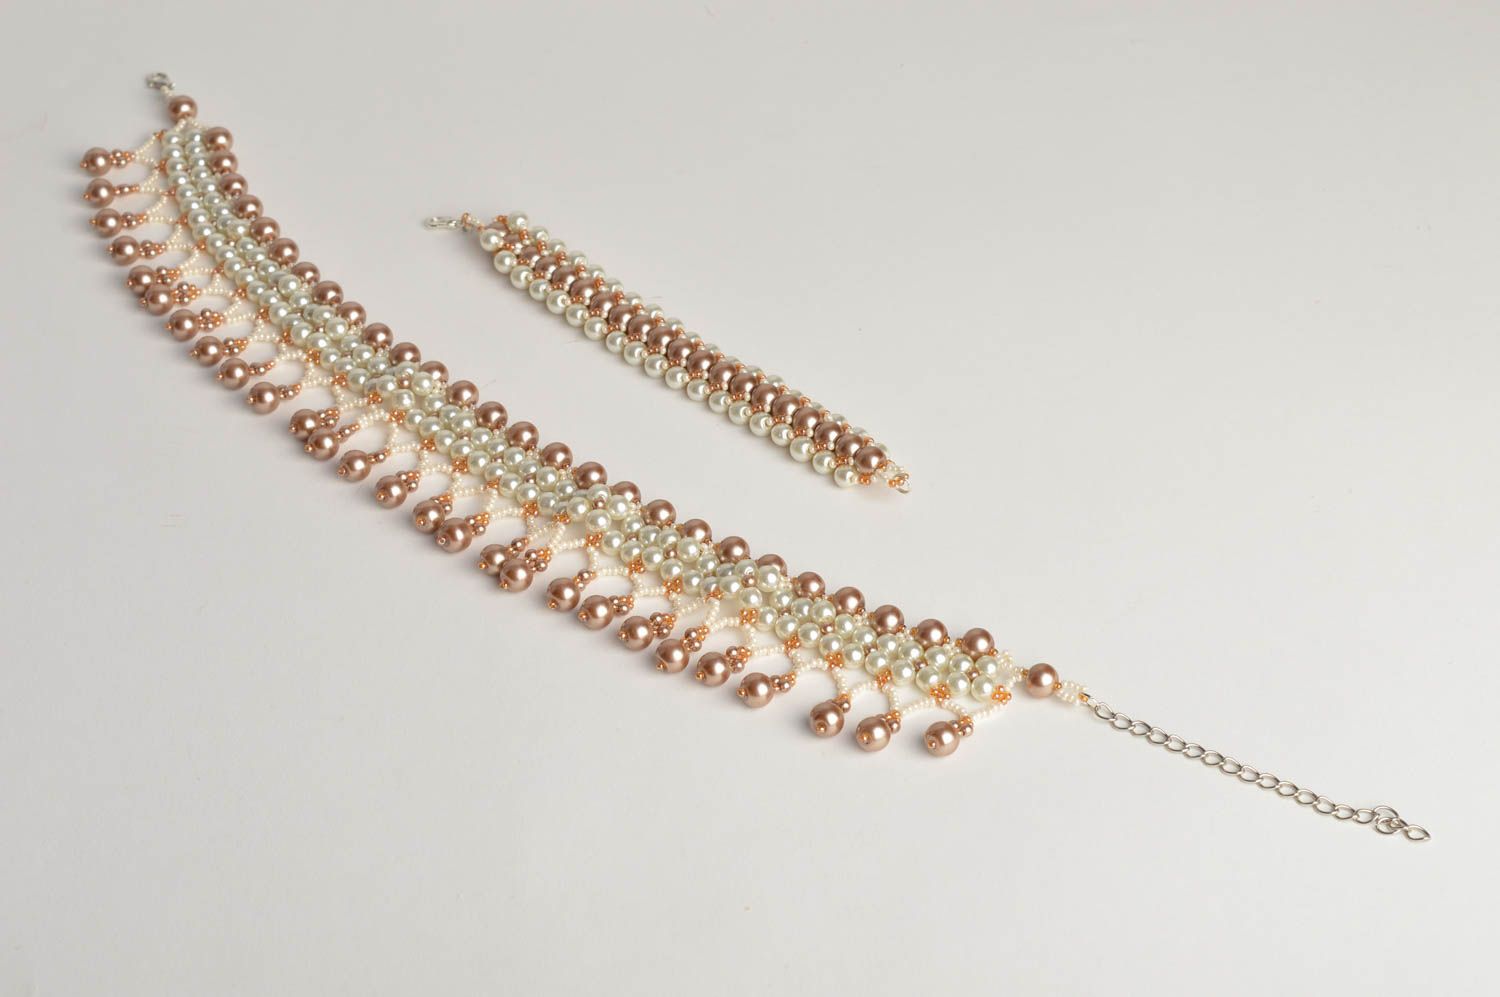 Handmade beaded jewelry set stylish elegant necklace elite wrist bracelet photo 4